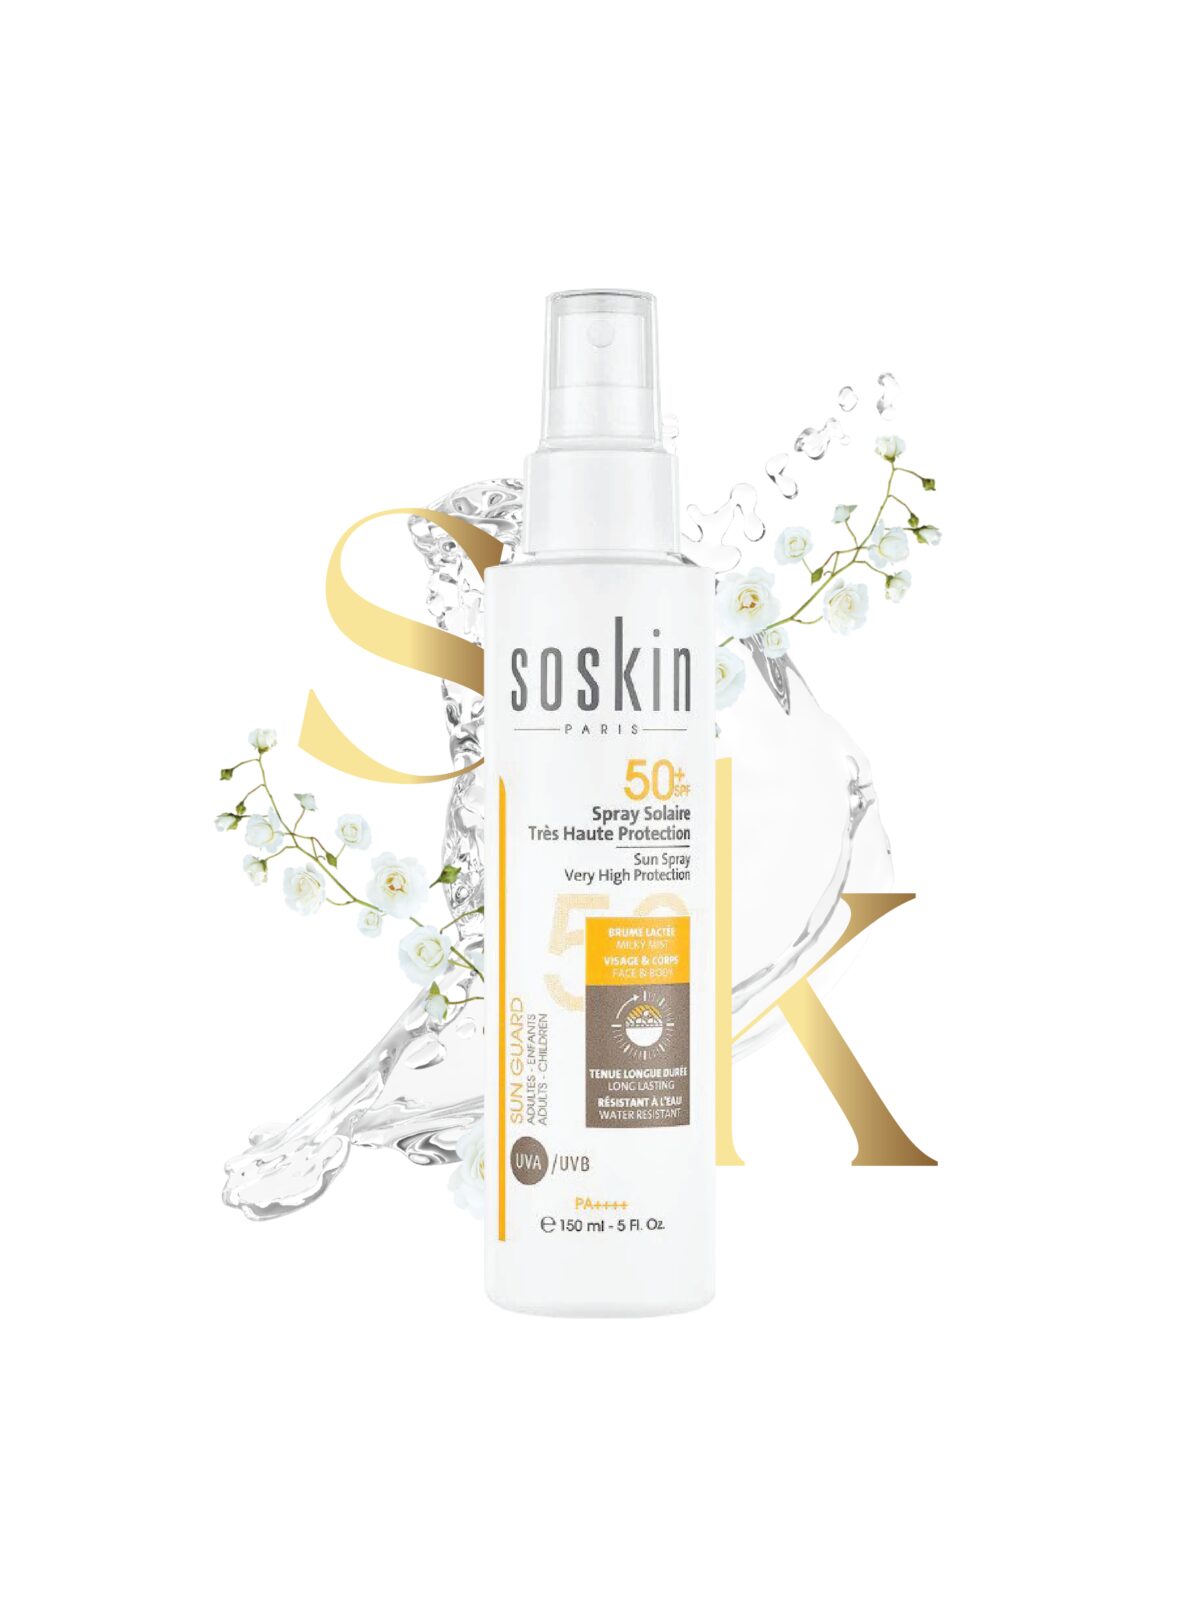 SoSkin-sunscreen-spray-allskintypes-spf50